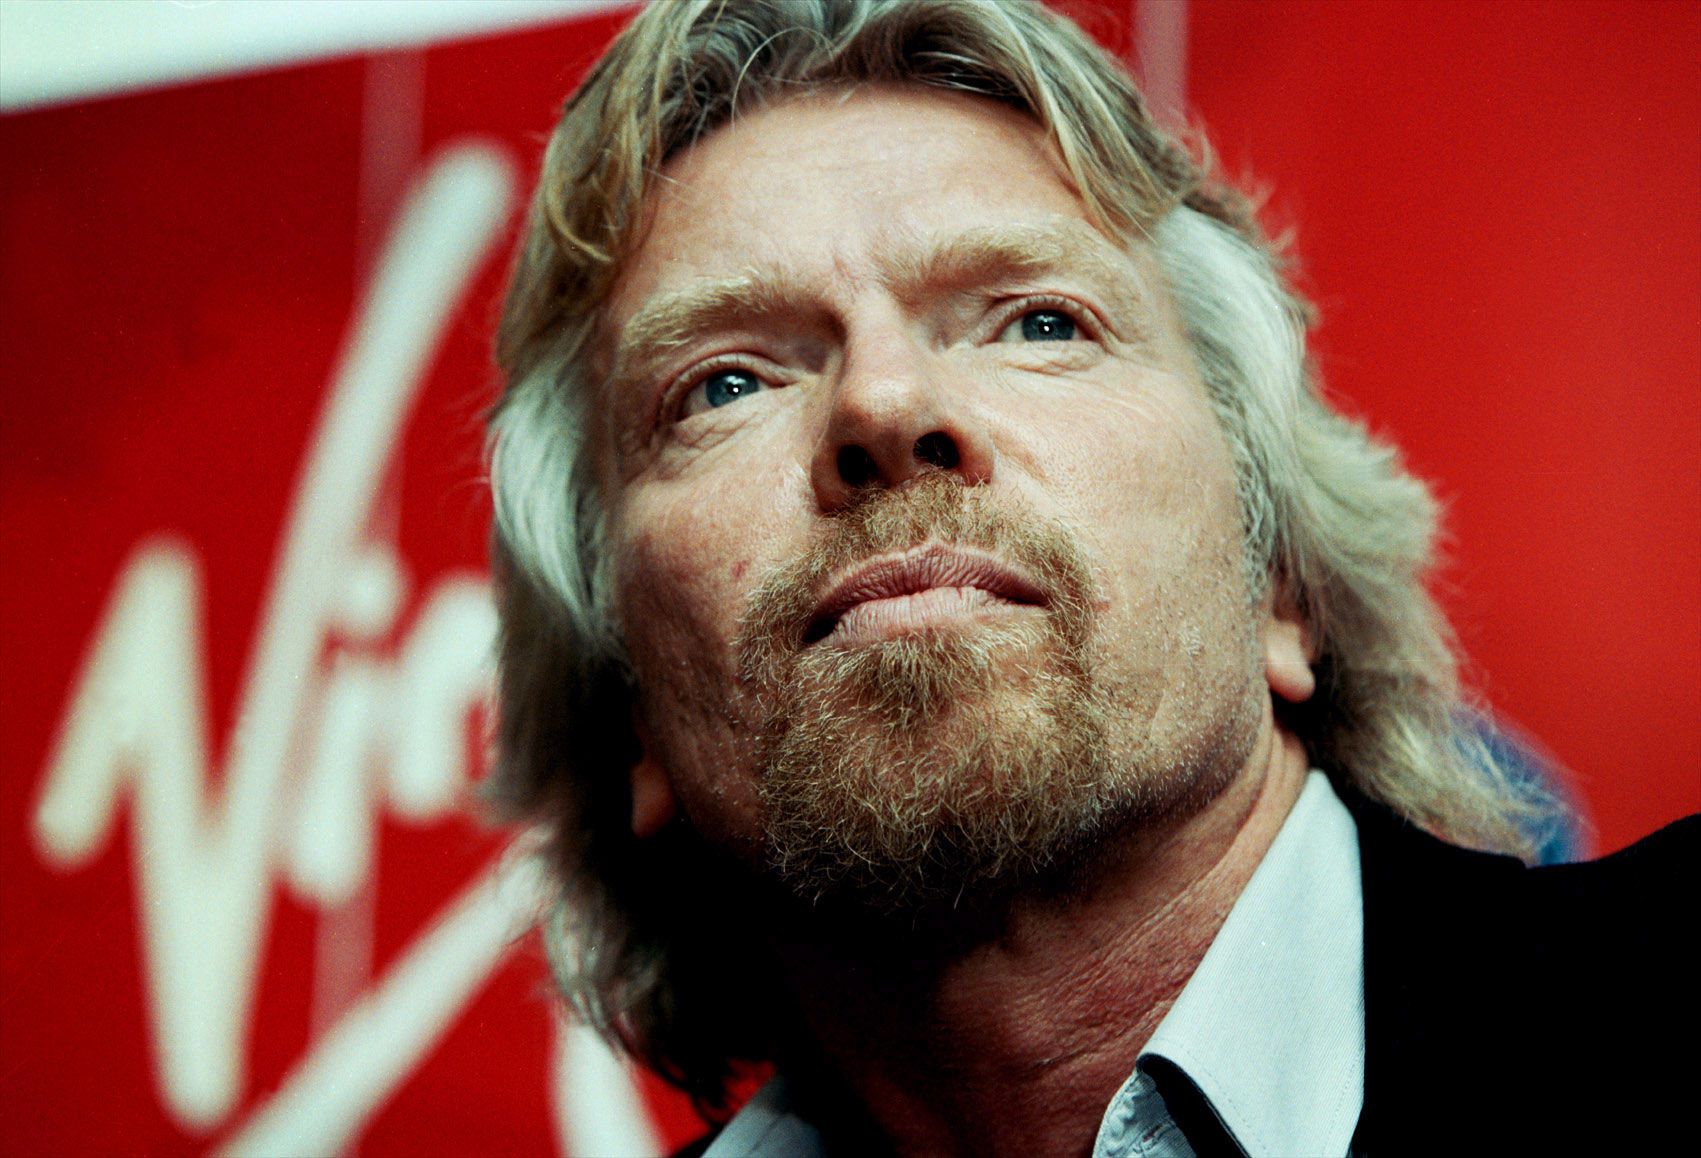 Exclusive: Richard Branson Says He Won't Let Virgin America Die